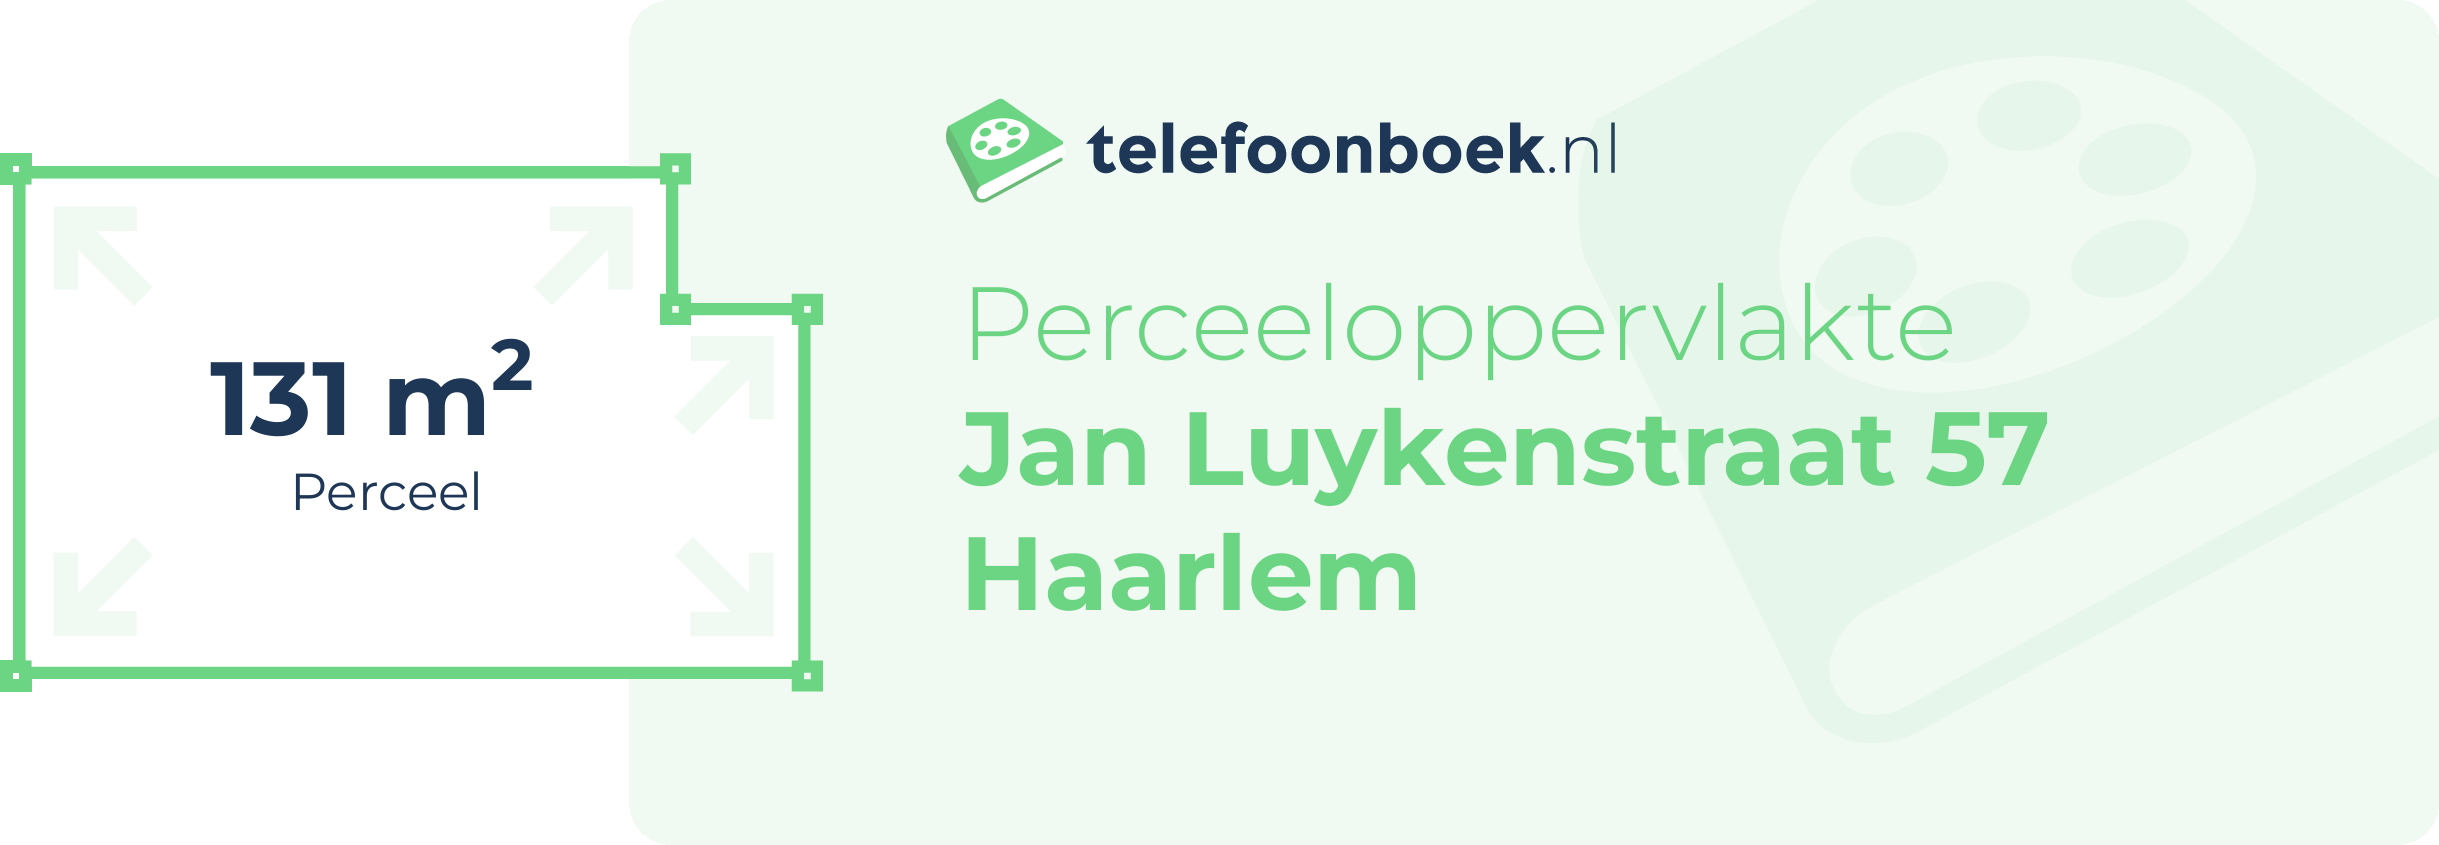 Perceeloppervlakte Jan Luykenstraat 57 Haarlem